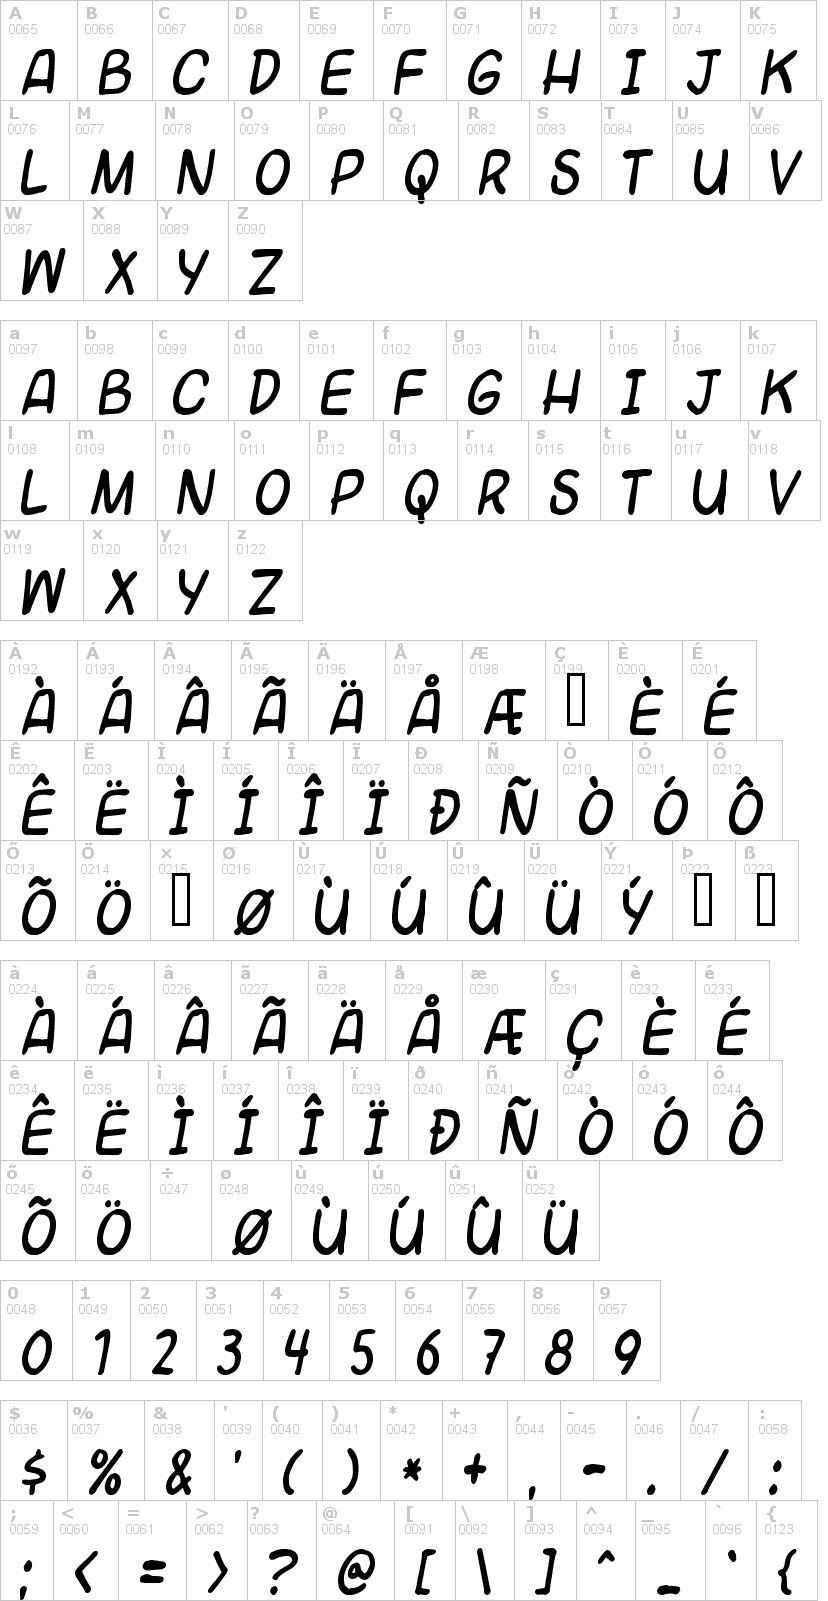 Lettere dell'alfabeto del font universal-fruitcake con le quali è possibile realizzare adesivi prespaziati